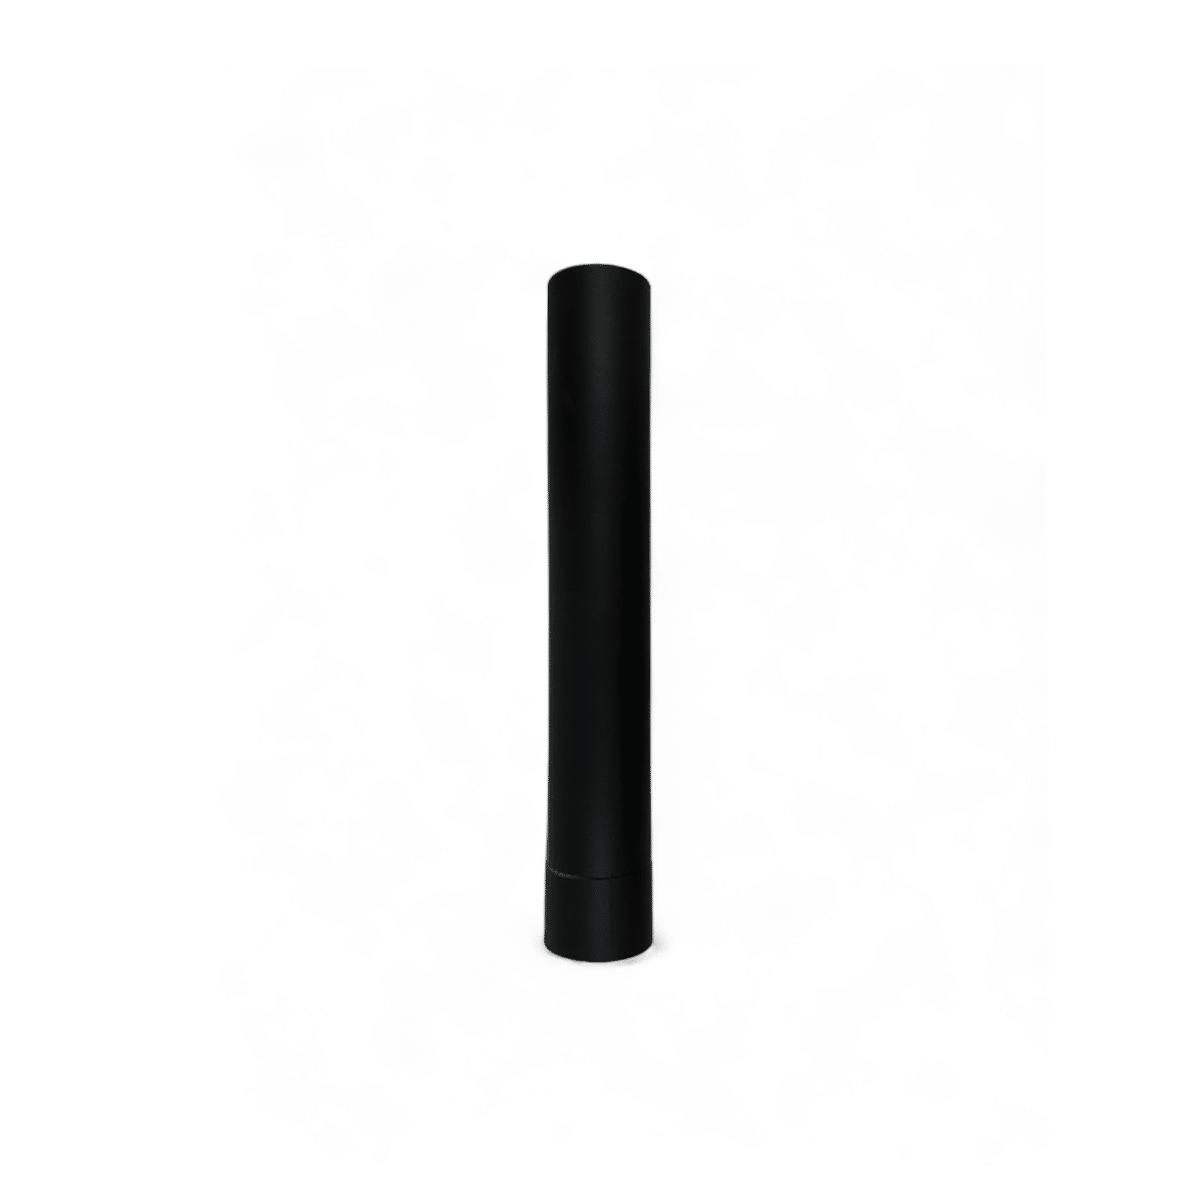 VIK - Kachelpijp 60 cm - zwart